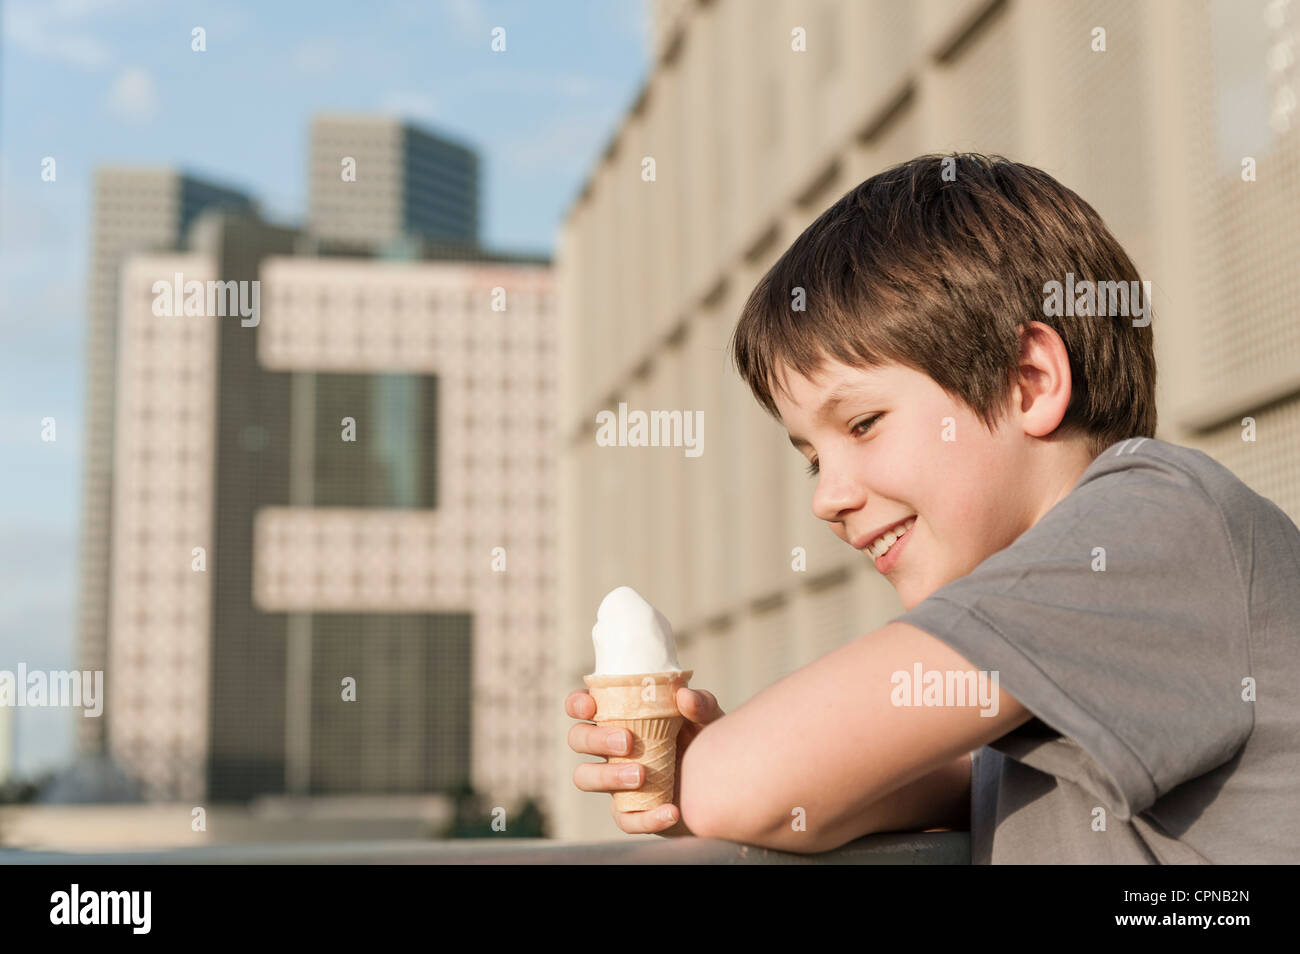 Boy holding ice cream cone, portrait Stock Photo